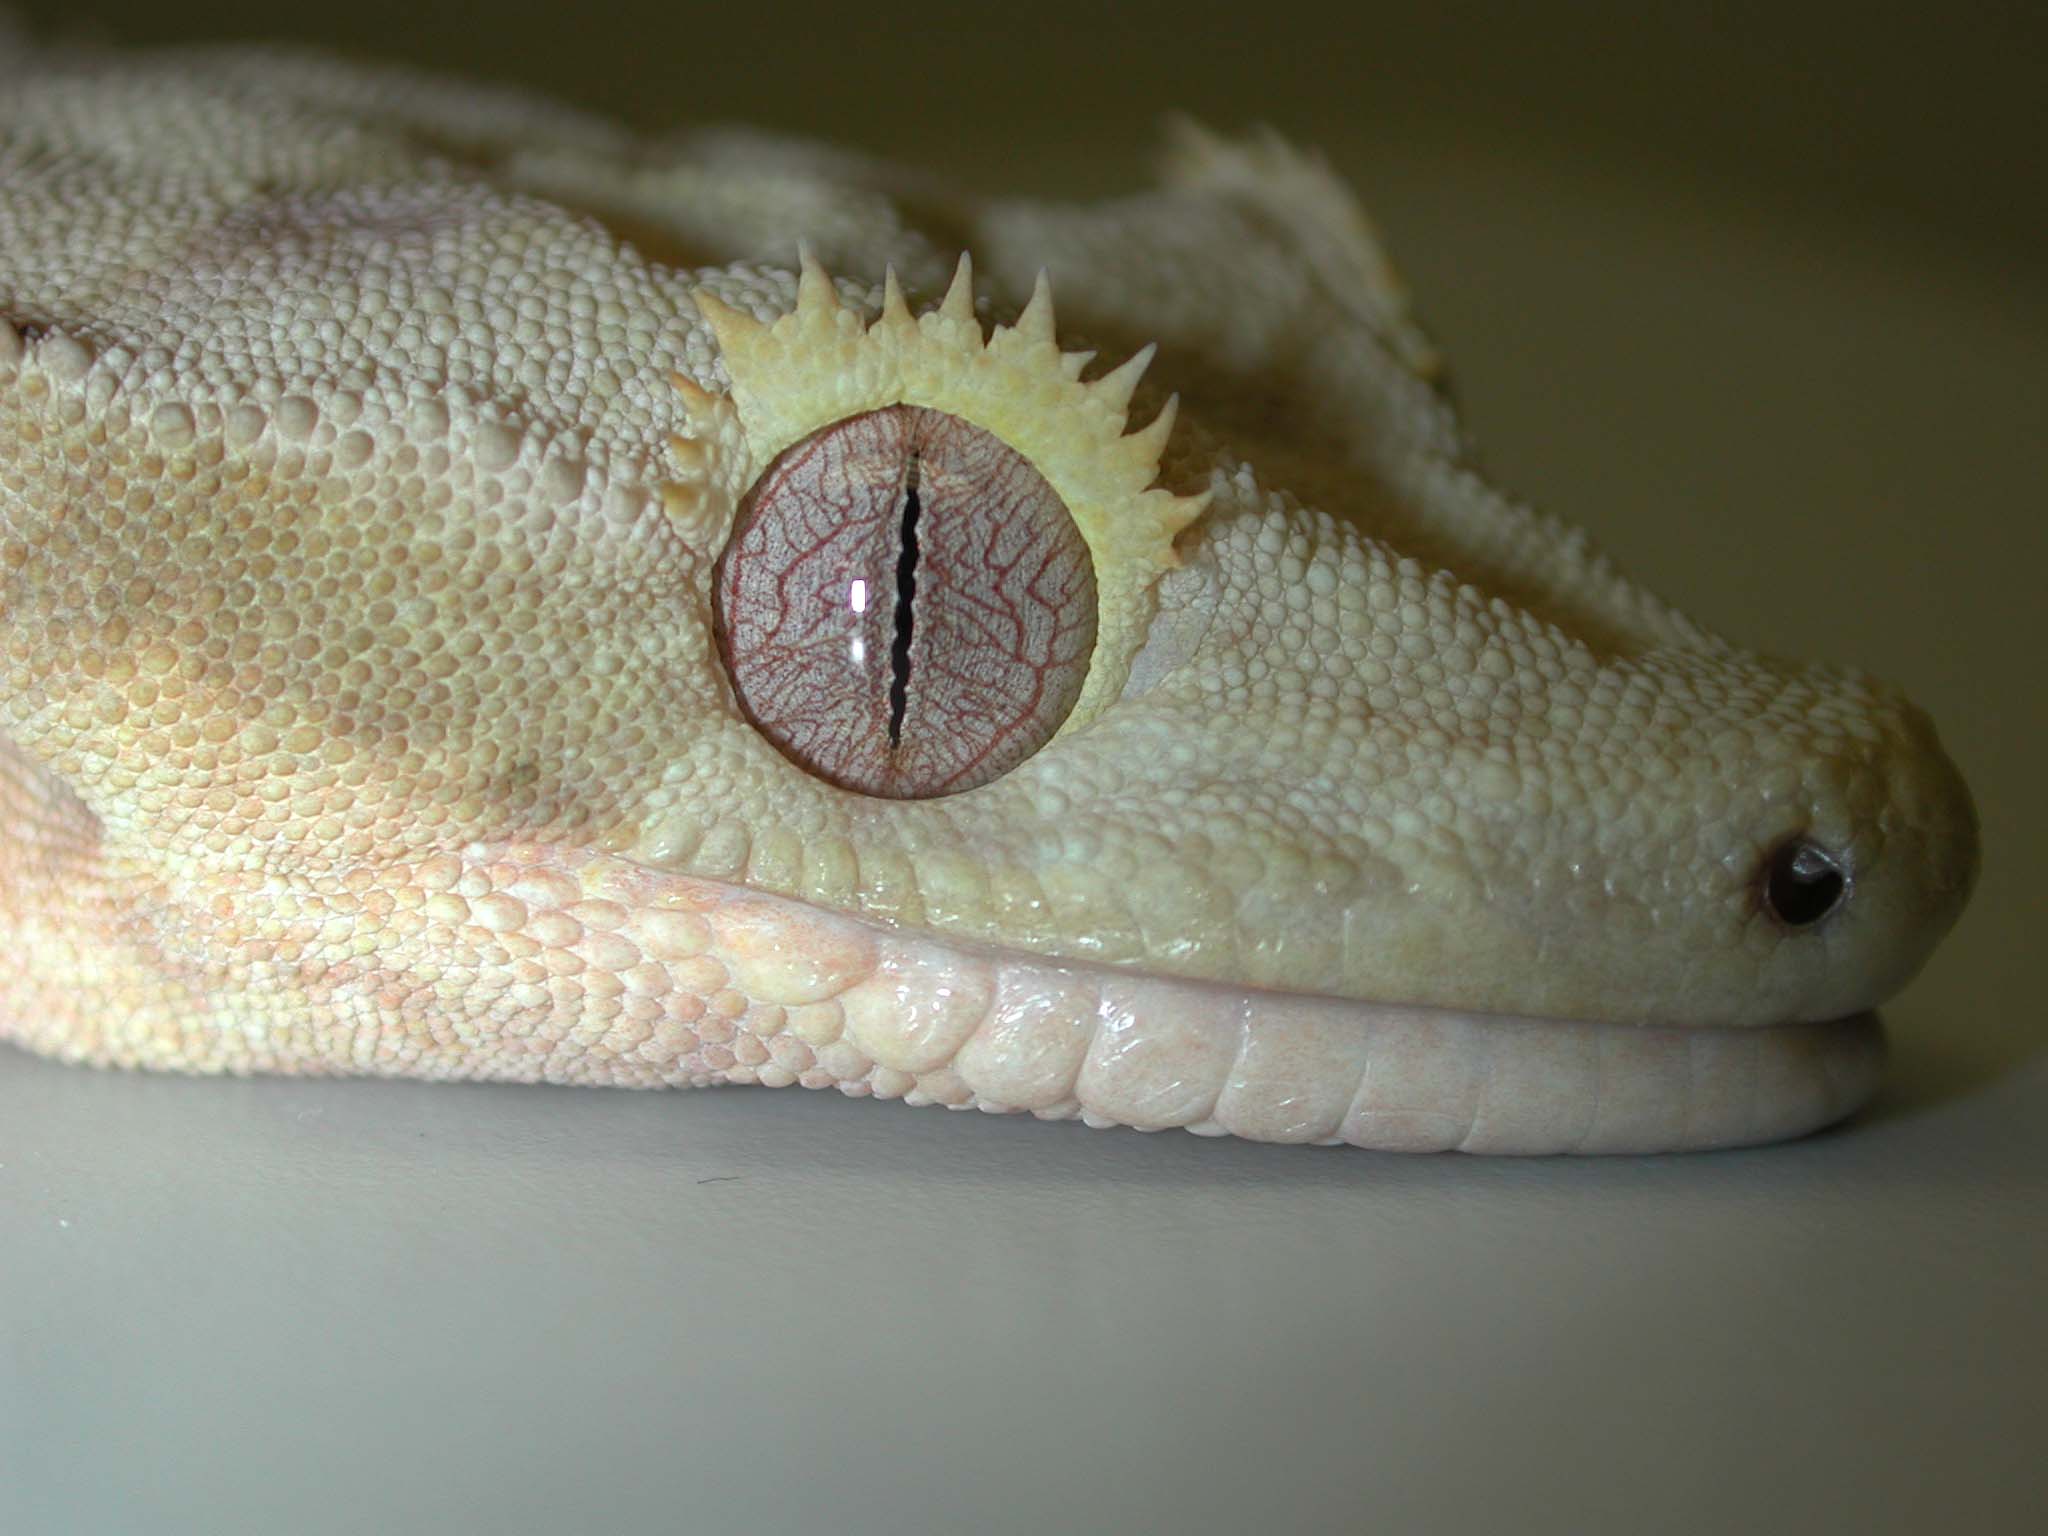 CrestedGecko.jpg